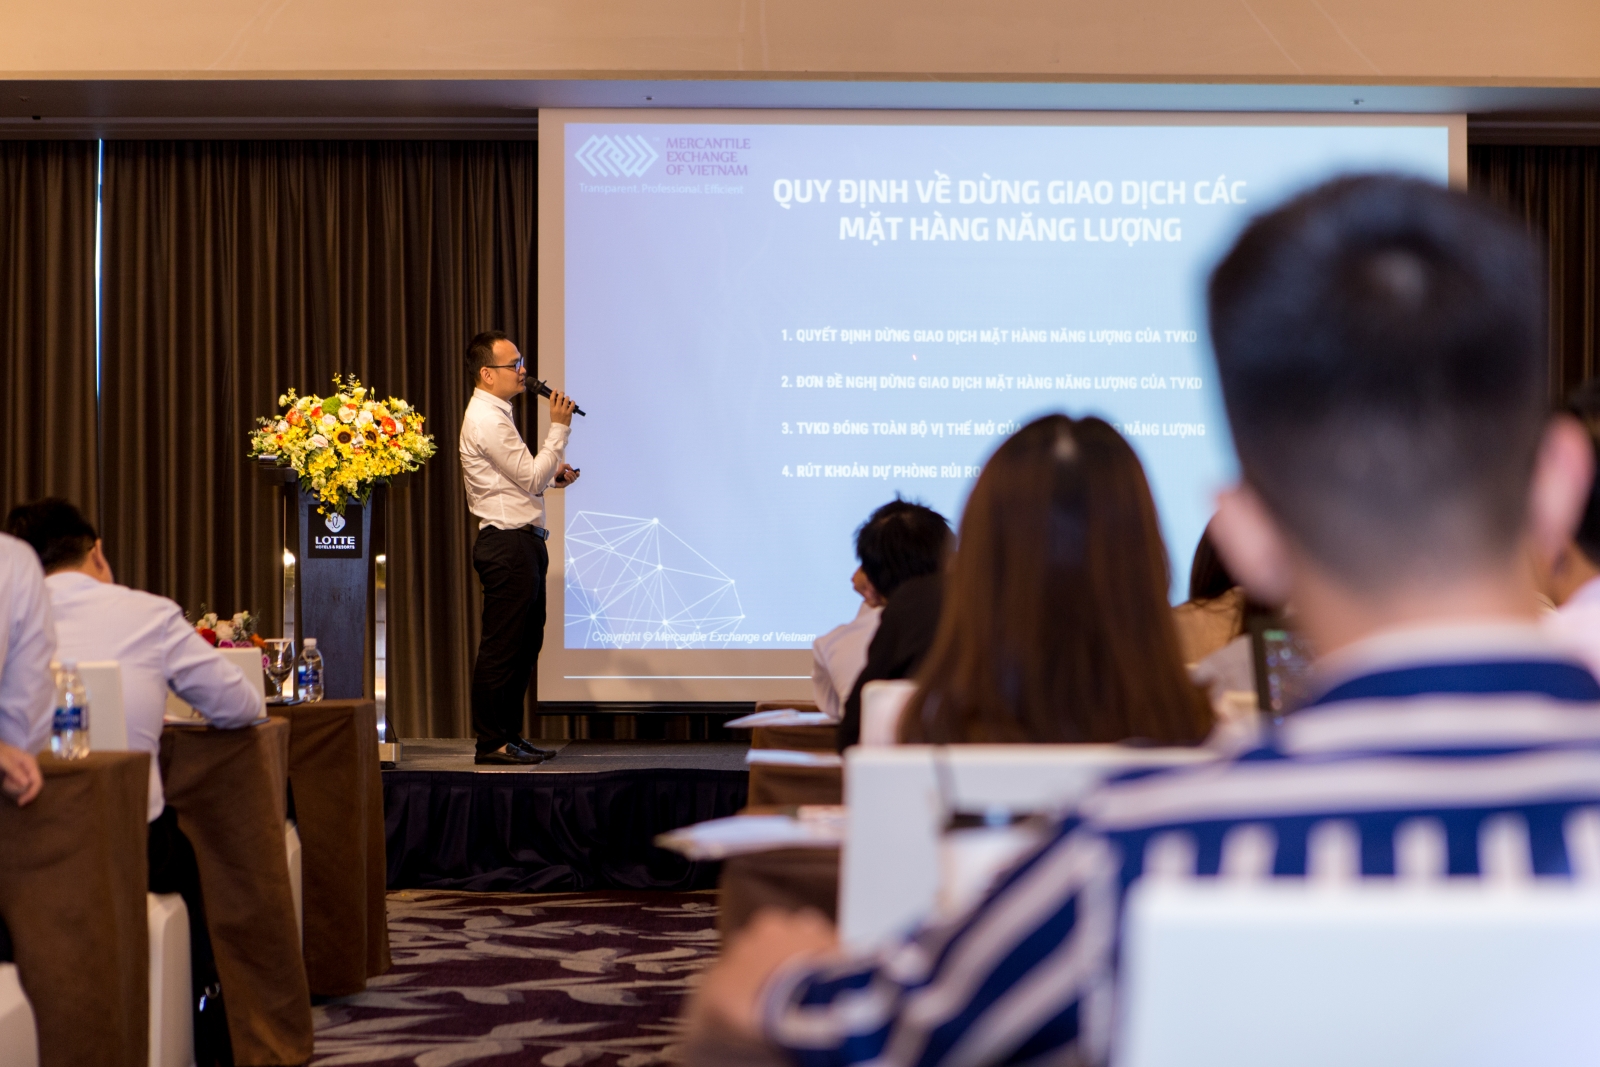 Sở Giao dịch Hàng hóa Việt Nam tổ chức Hội nghị “Tập huấn Thành viên”